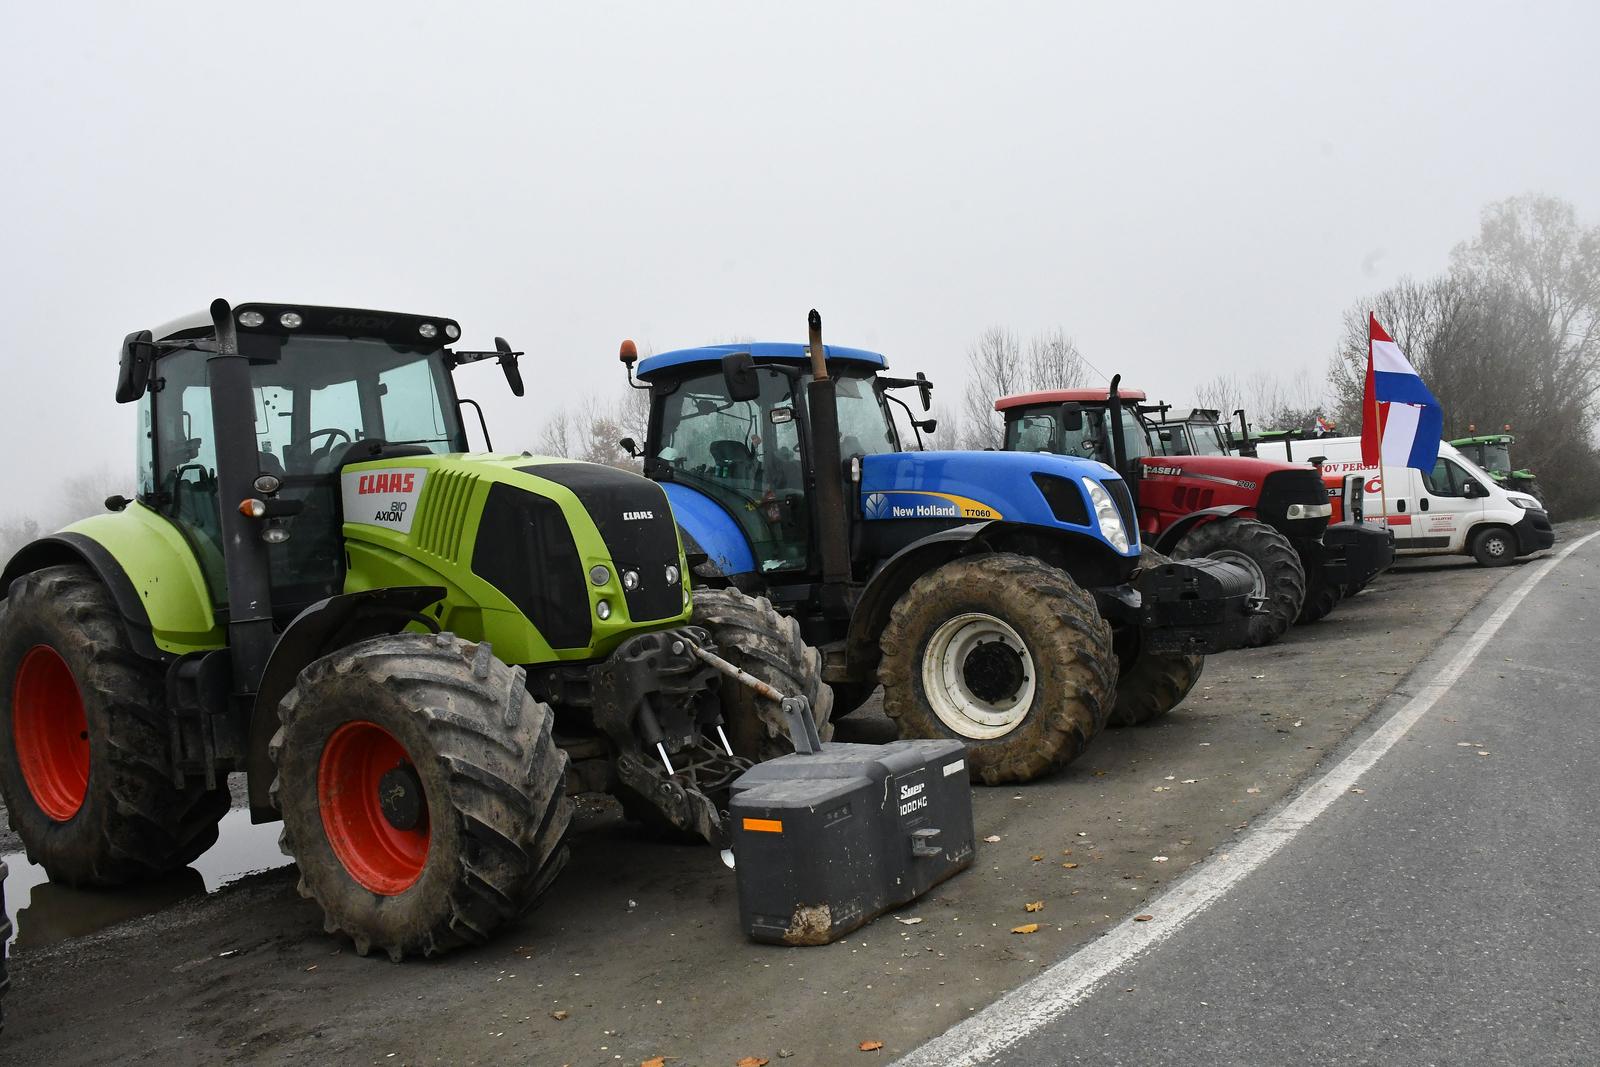 24.11.2023., Luzani - U znak potpore svinjogojcima pridruzili su se i peradari s traktorima na novom prosvjednom punktu u blizini izlaza na autocestu A3 kod naplatnih kuica Luzani. Photo: Ivica Galovic/PIXSELL